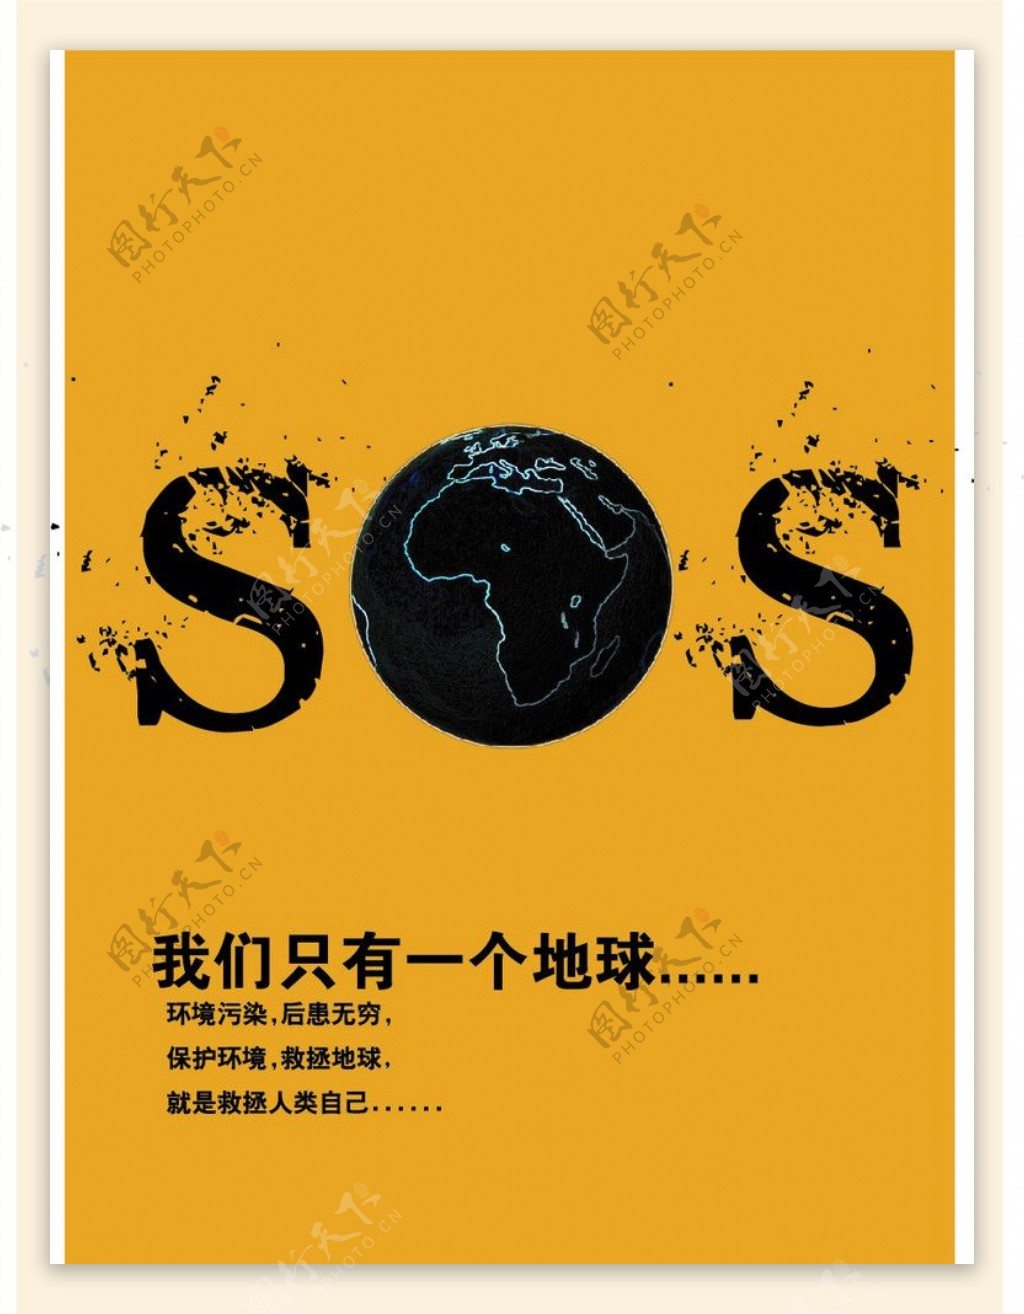 SOS环保地球A3广告宣传设计图片